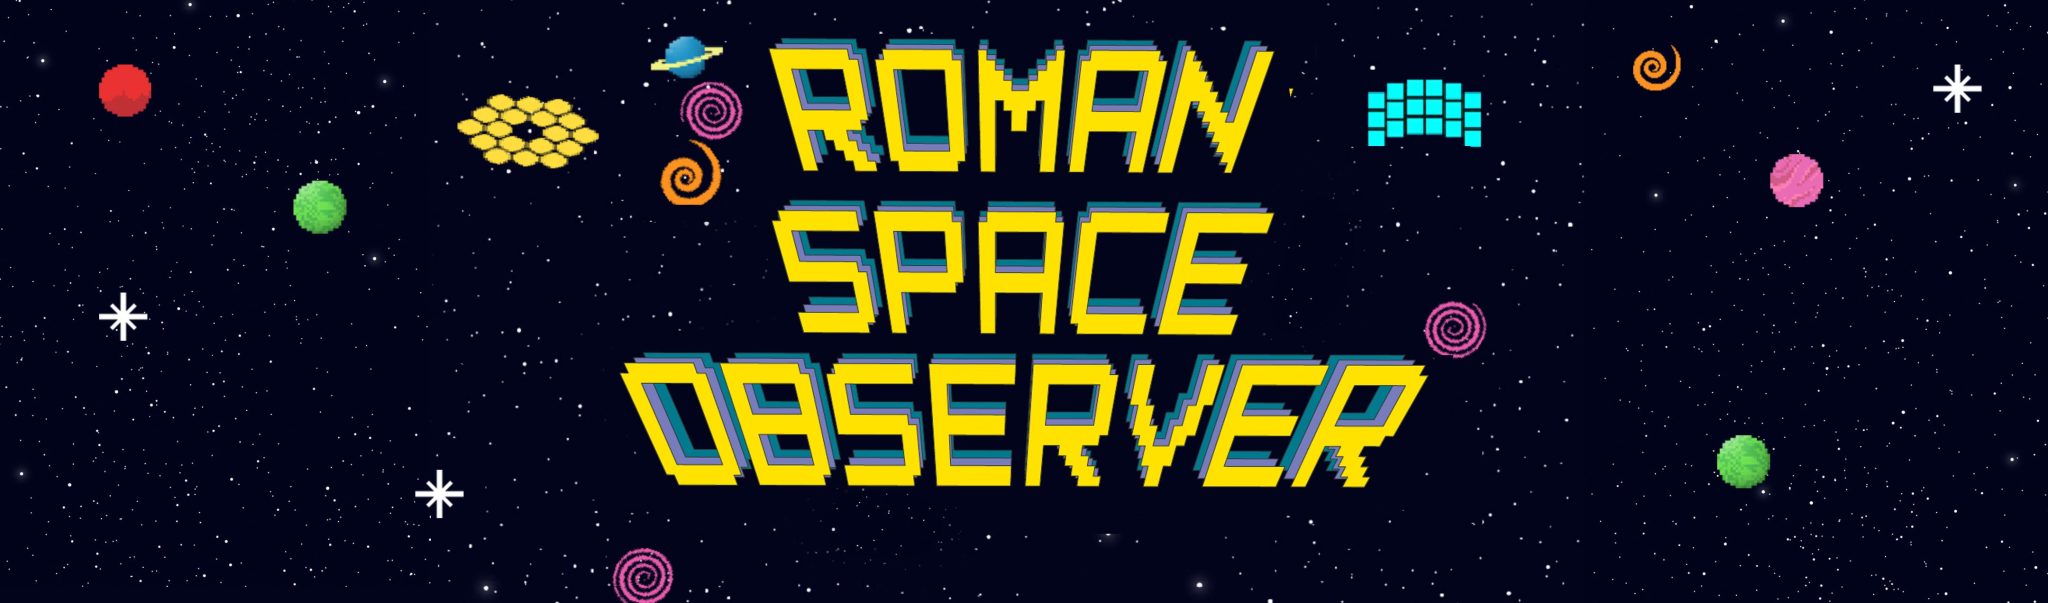 La NASA se vuelve retro con el juego Roman Space Watcher